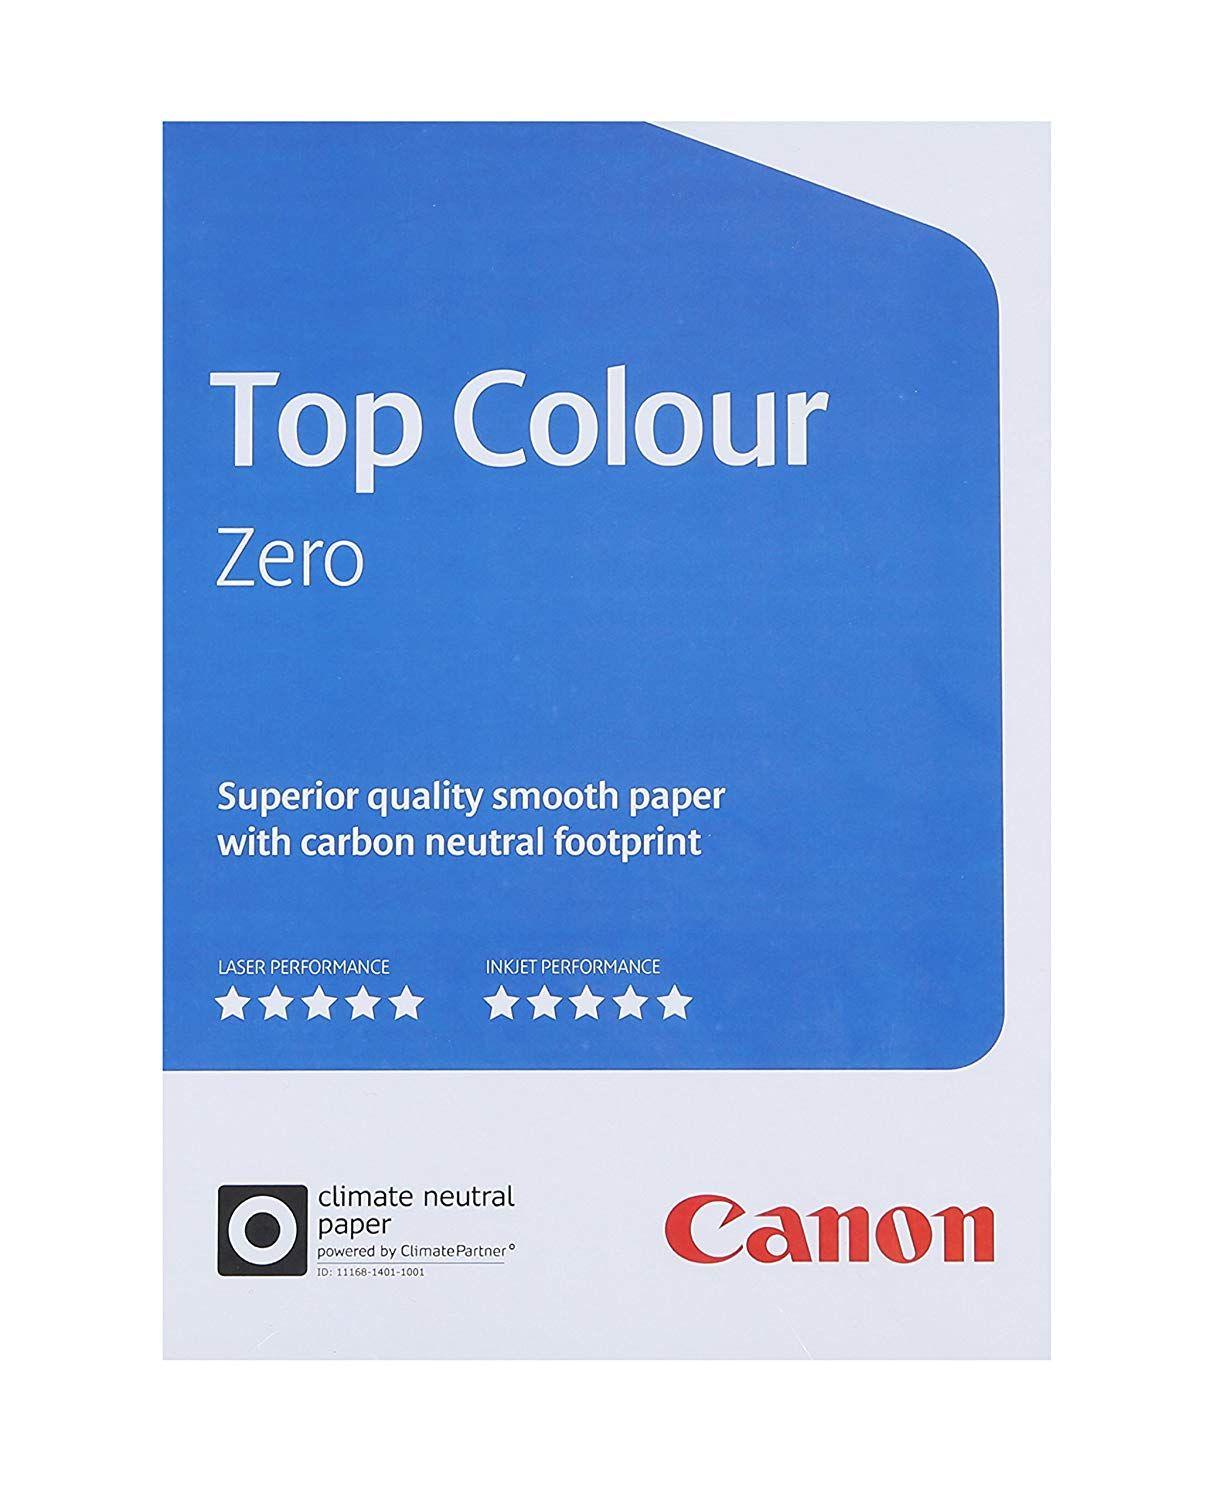 Canon Copiers Logo - Canon 99661554 Top Colour Zero Colour Copier Paper for all Printers